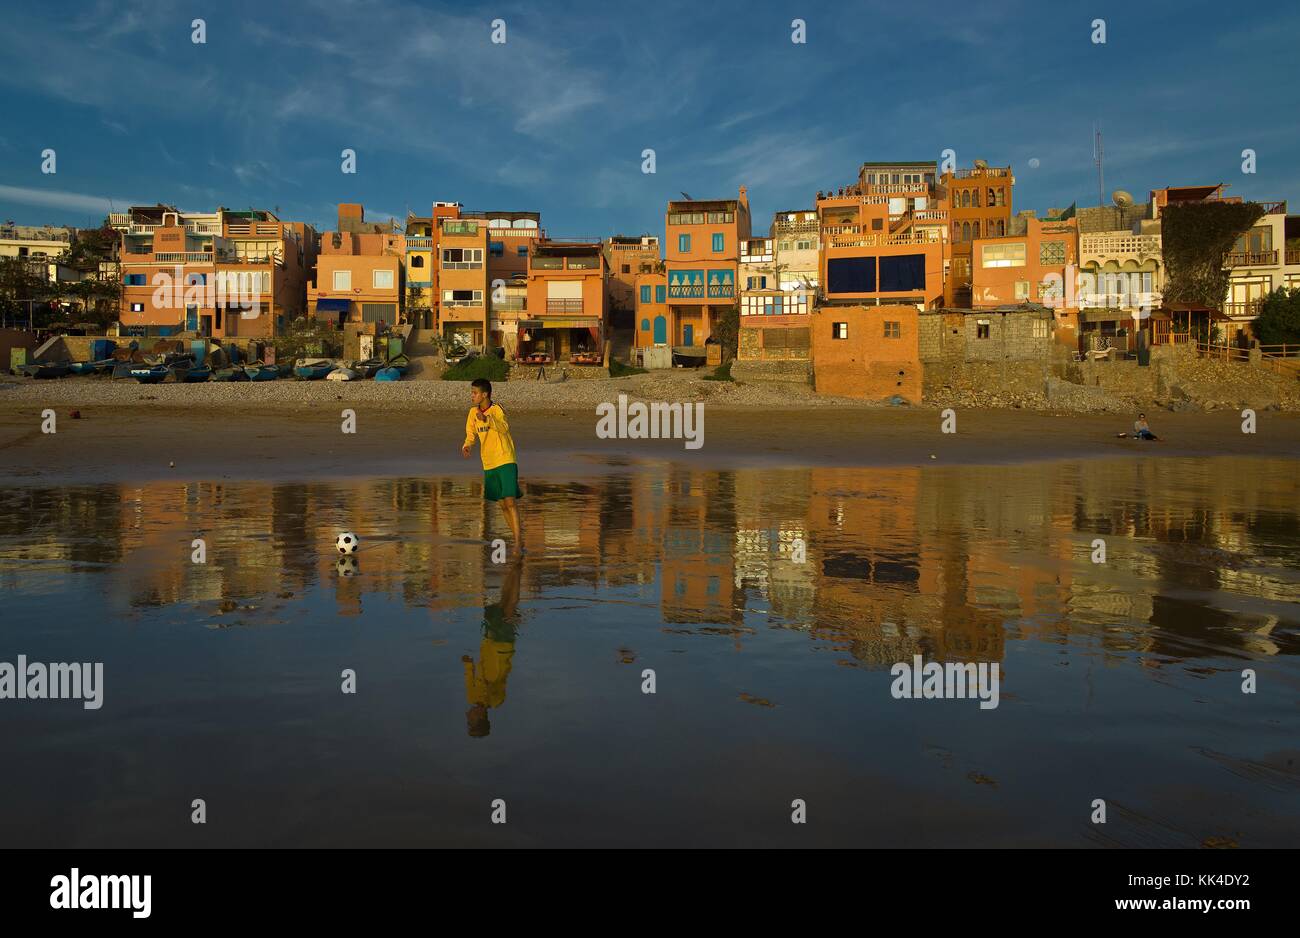 Taghazout. - 06/03/2012 - - Taghazout. - riflessione del Marocco. - Sylvain Leser / le Pictorium Foto Stock